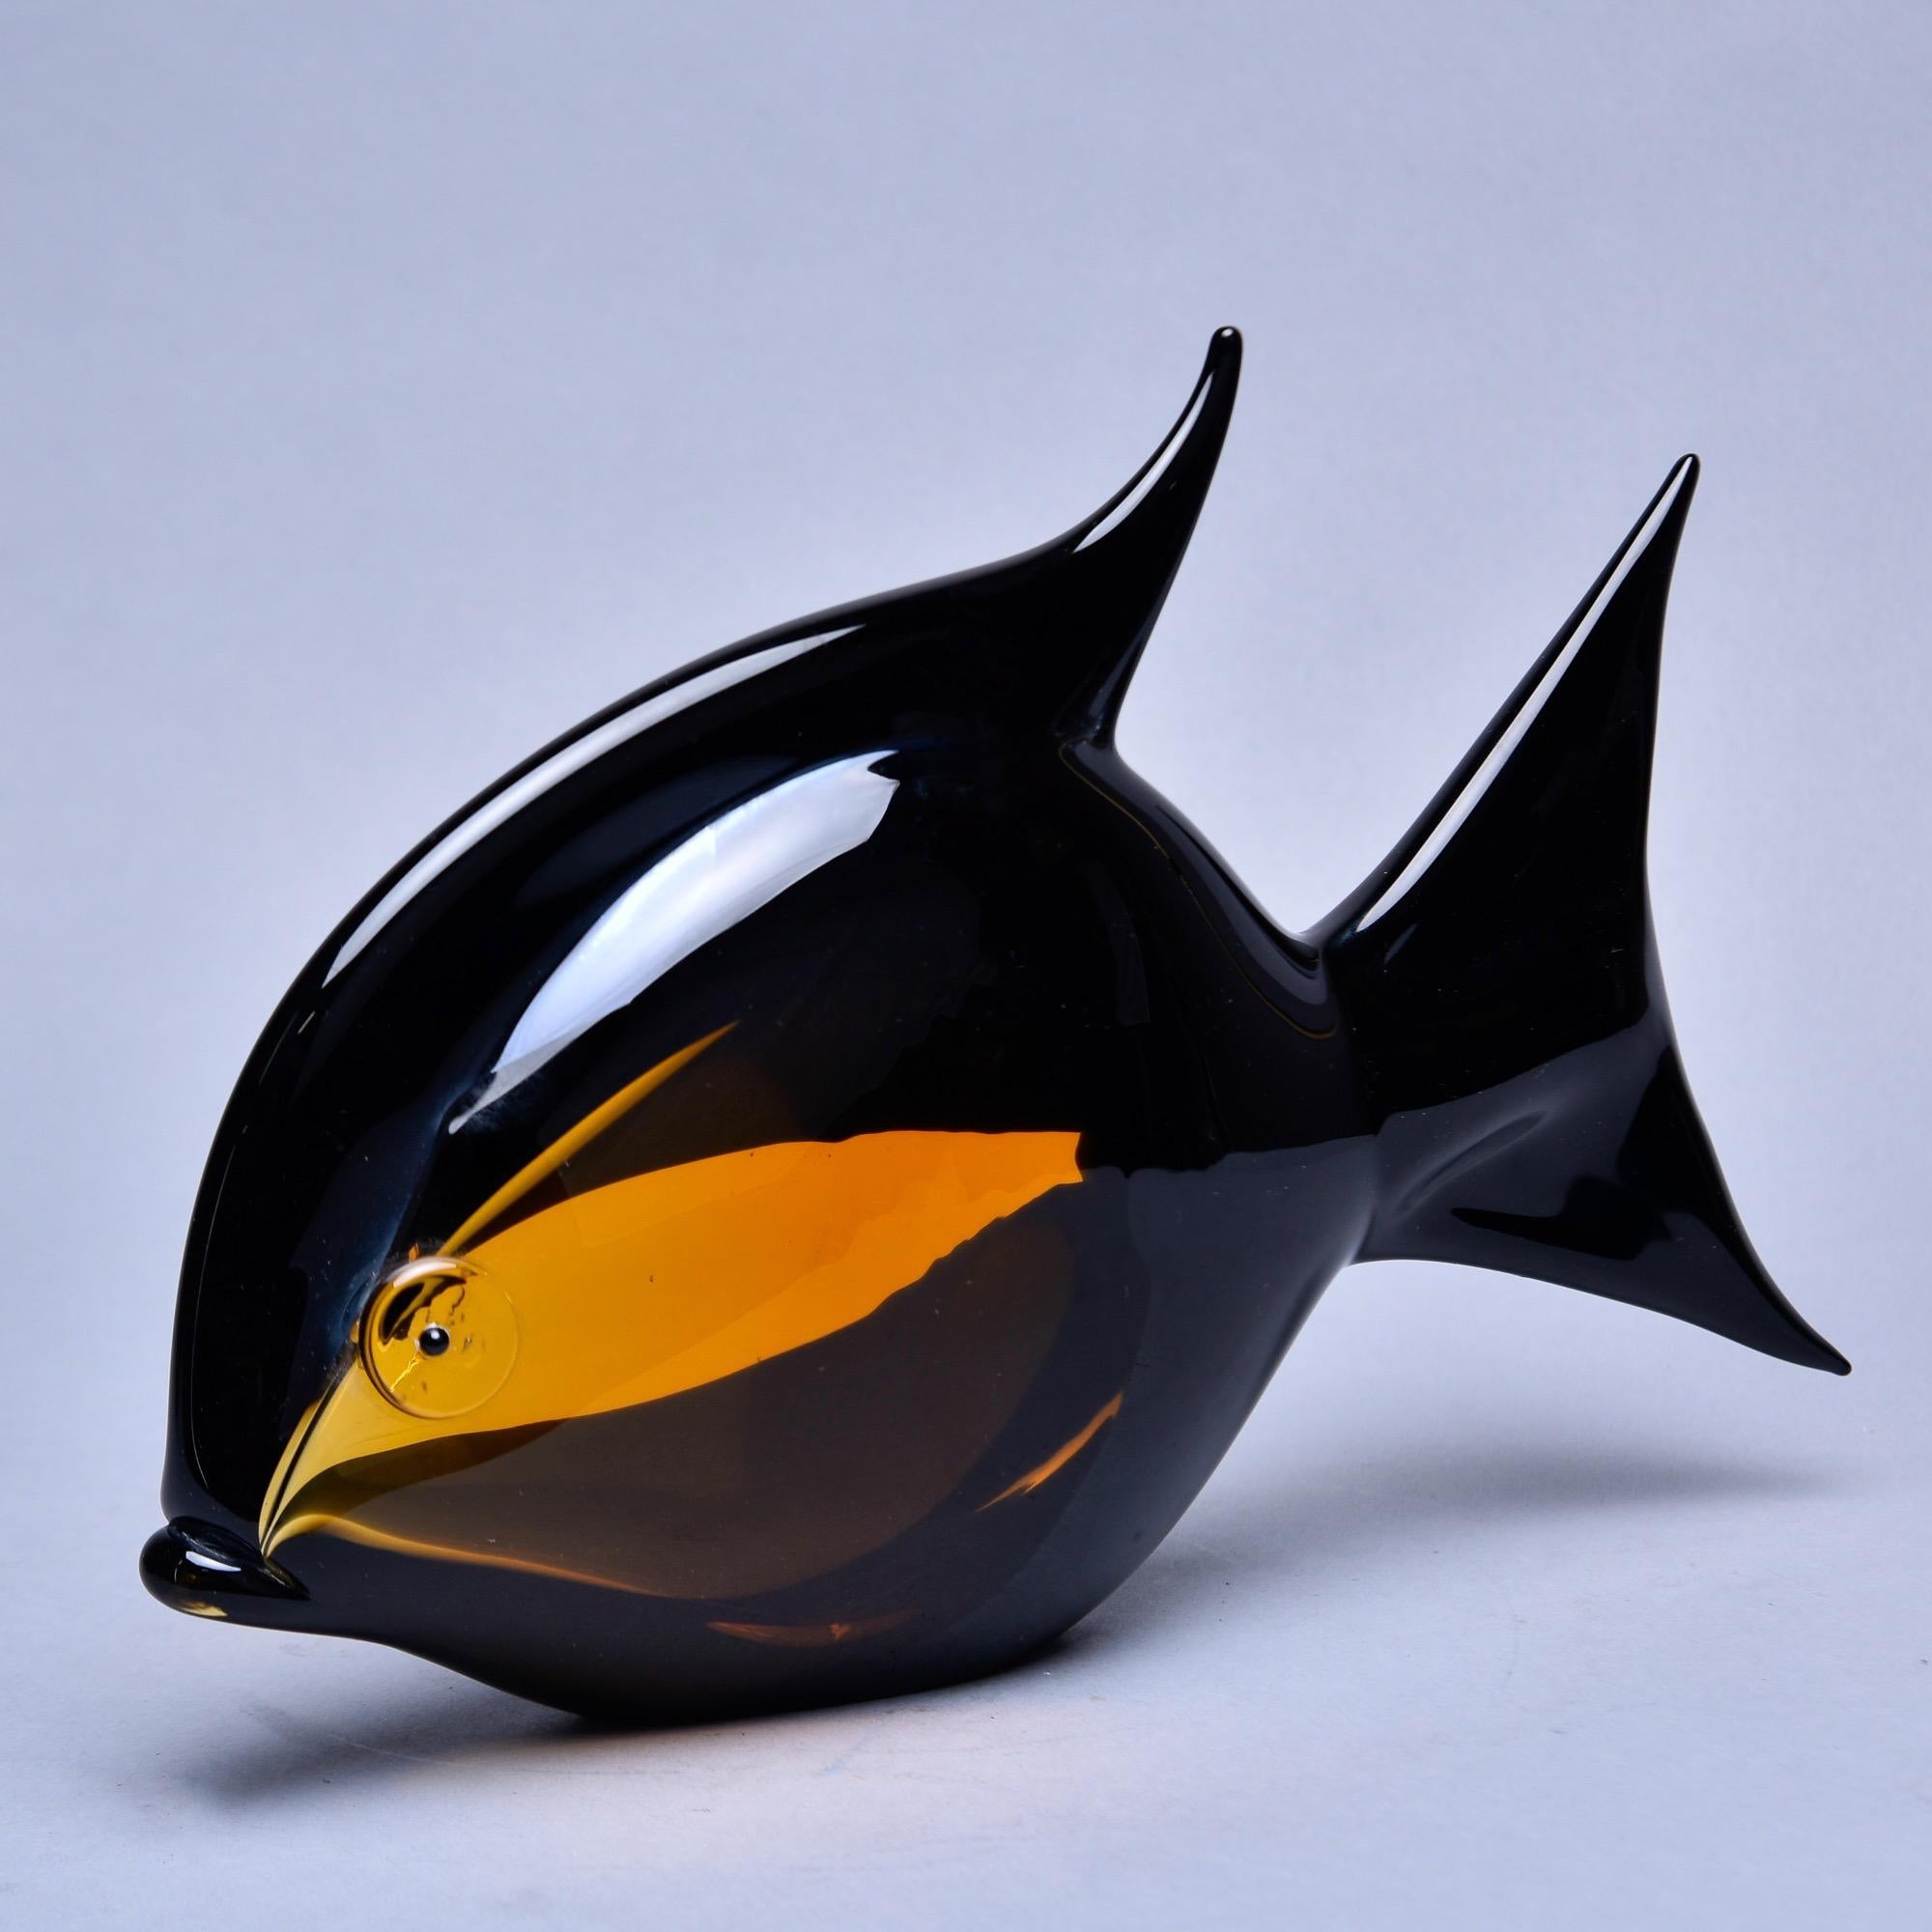 Trouvée en Italie, cette grande sculpture de poisson de Murano en verre noir et ambre date des années 1990. Excellent état vintage, aucun défaut ni réparation n'ont été constatés. Deux autres poissons de cette couleur sont disponibles au moment de